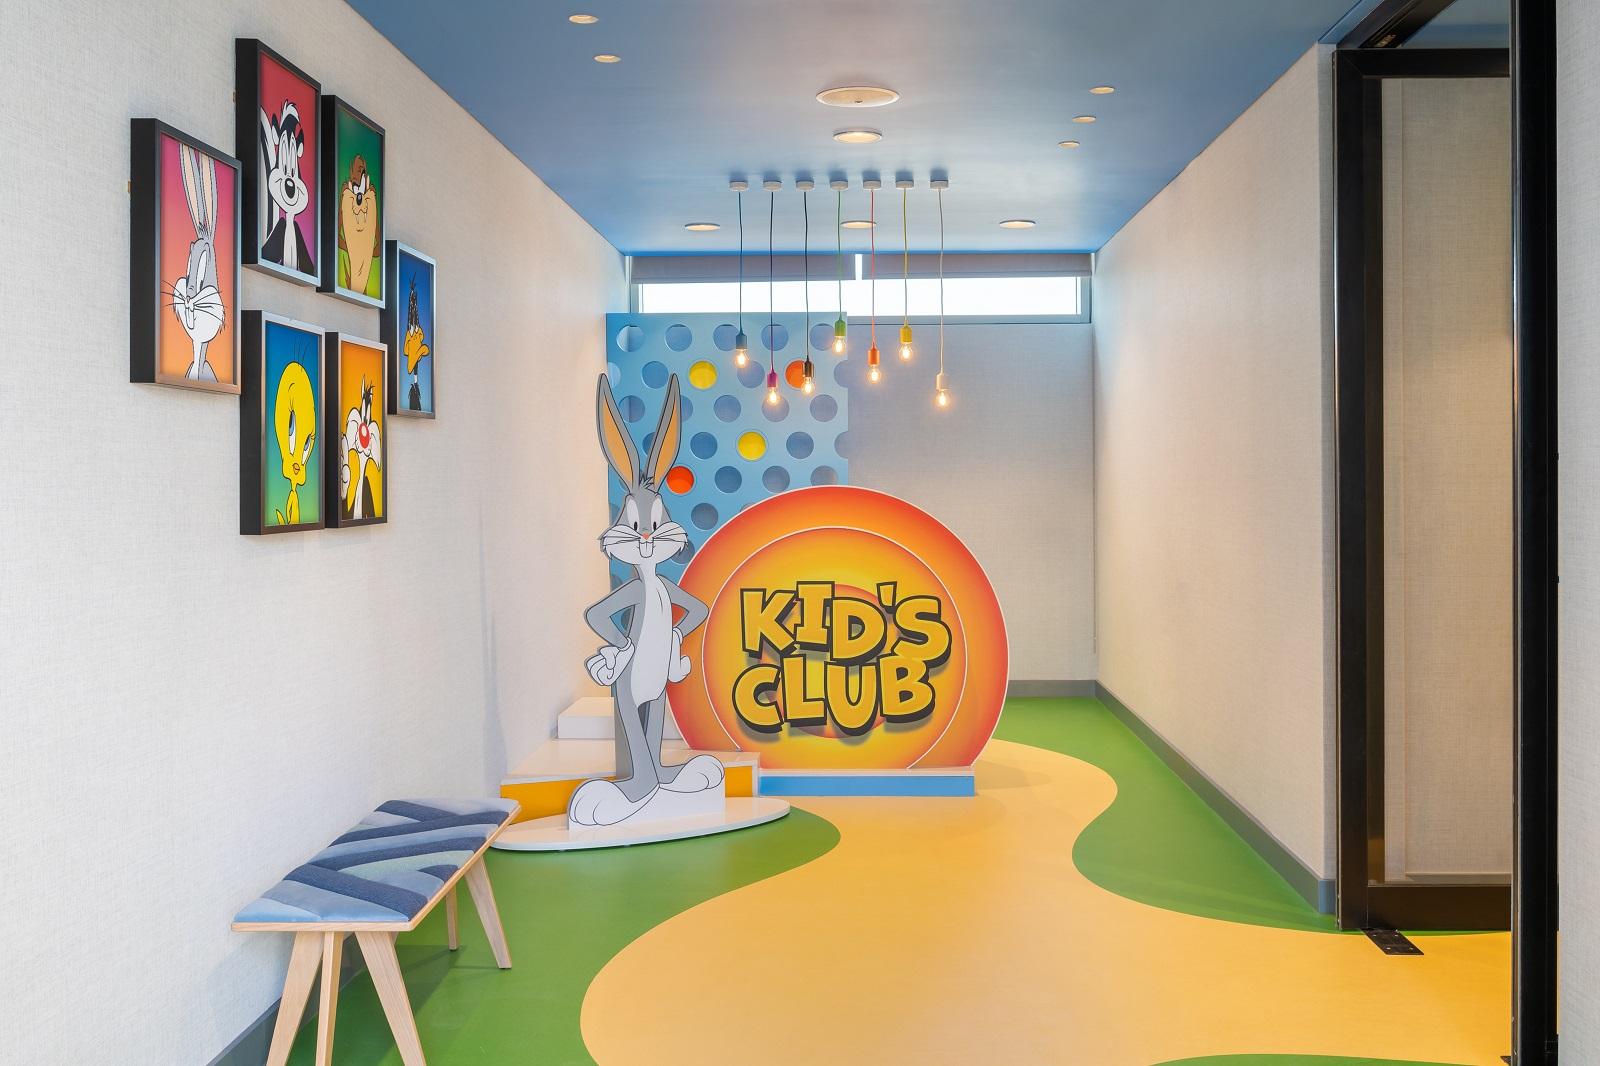 The WB Abu Dhabi Kids Club Entrance